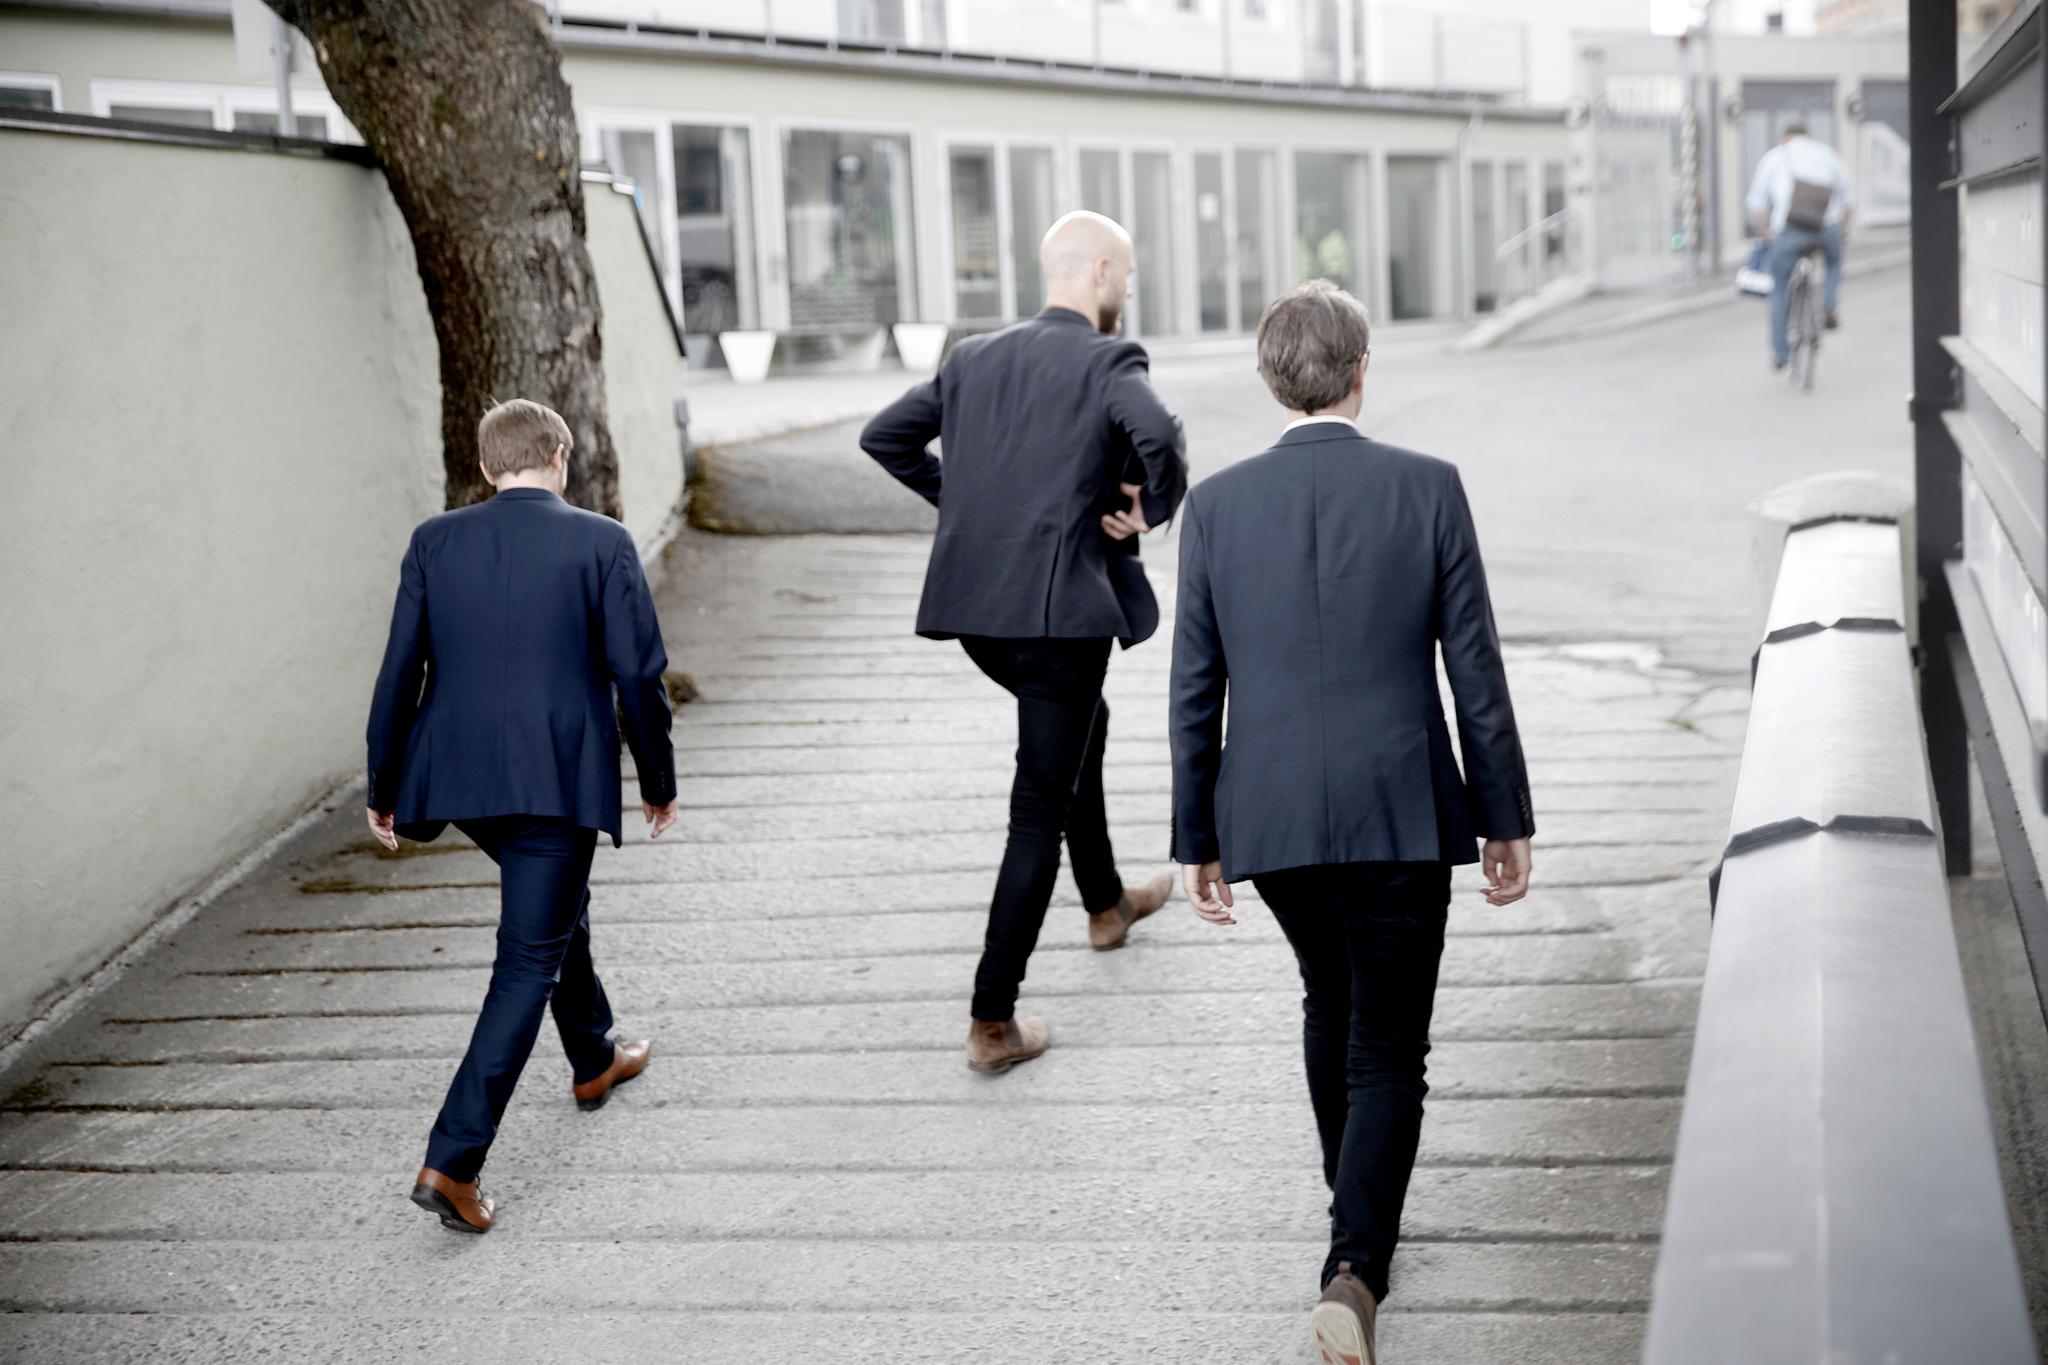  Blazere og blanke sko, Madrugada er tilbake. Fra venstre: Jon Lauvland Pettersen, Sivert Høyem og Frode Jacobsen.